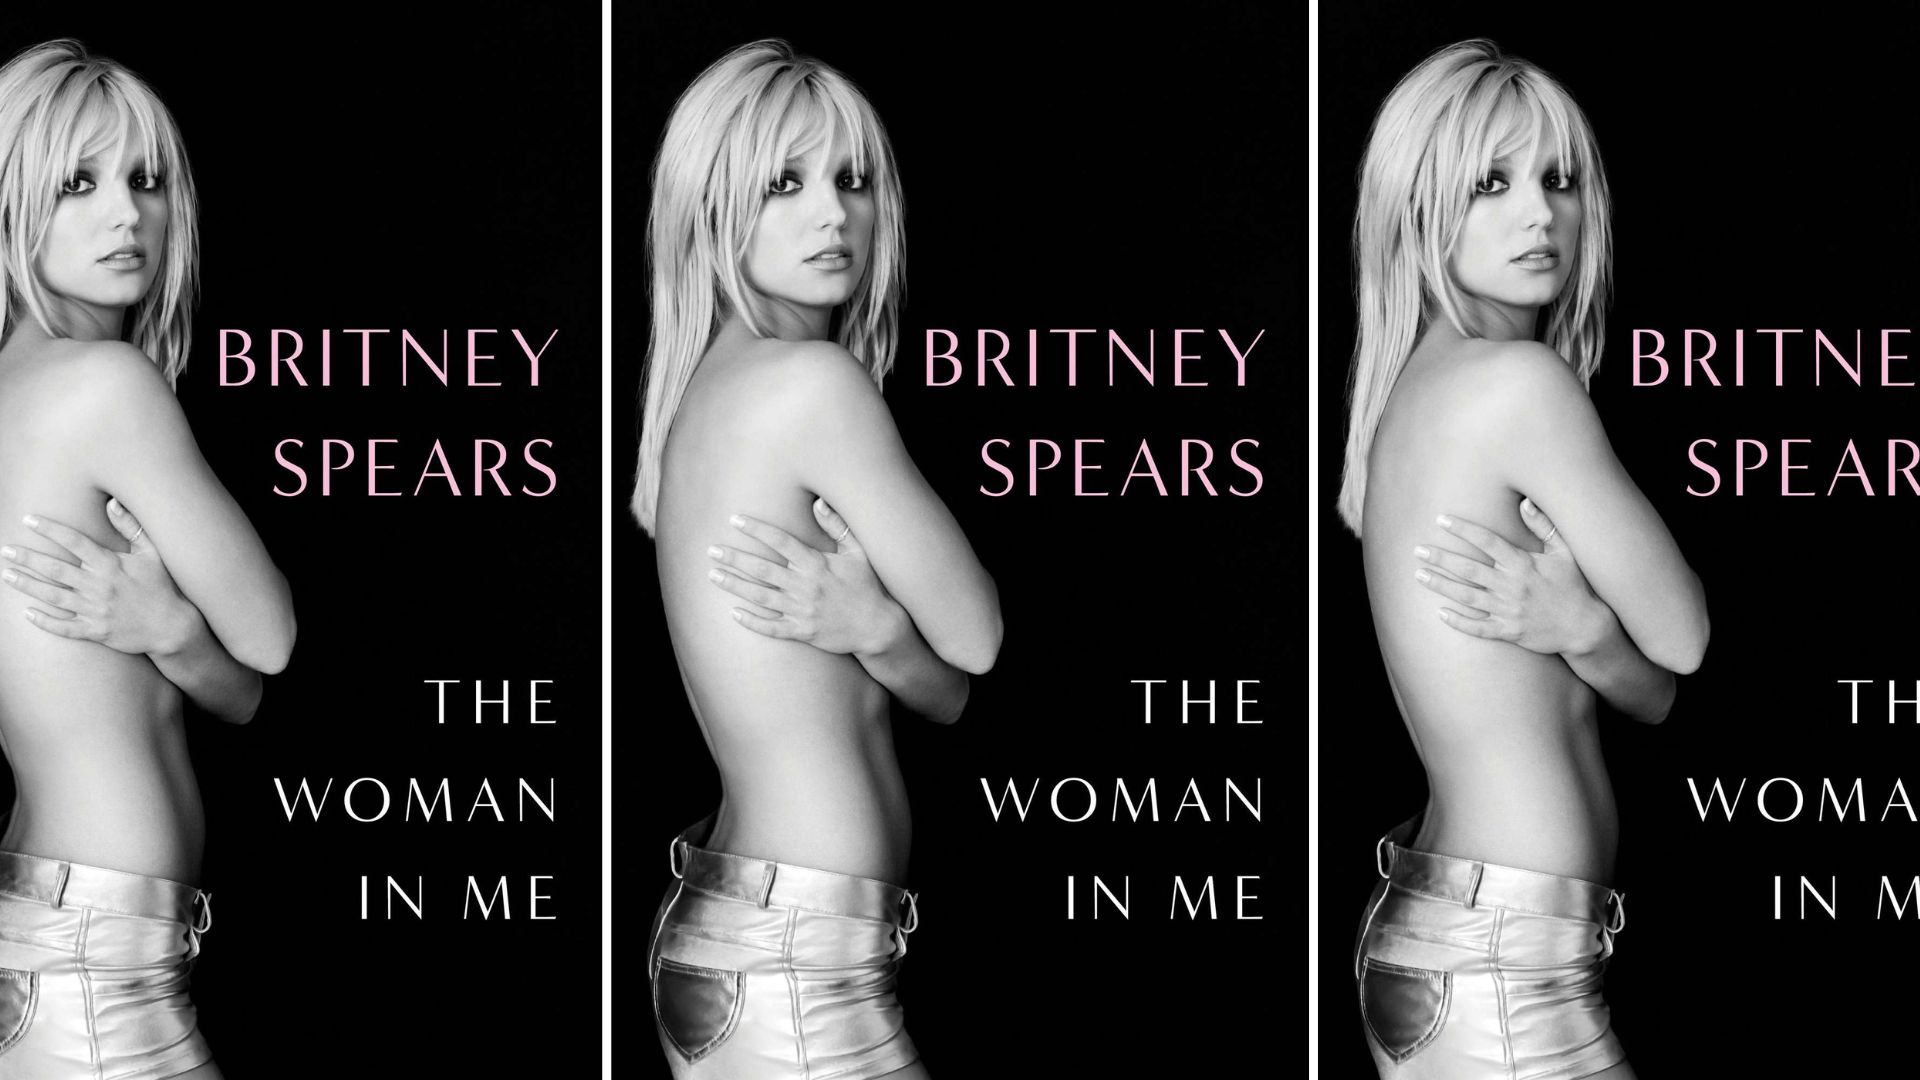 Couverture de l'autobiographie de Britney Spears, "The Woman in me" // Source : Simon & Schuster